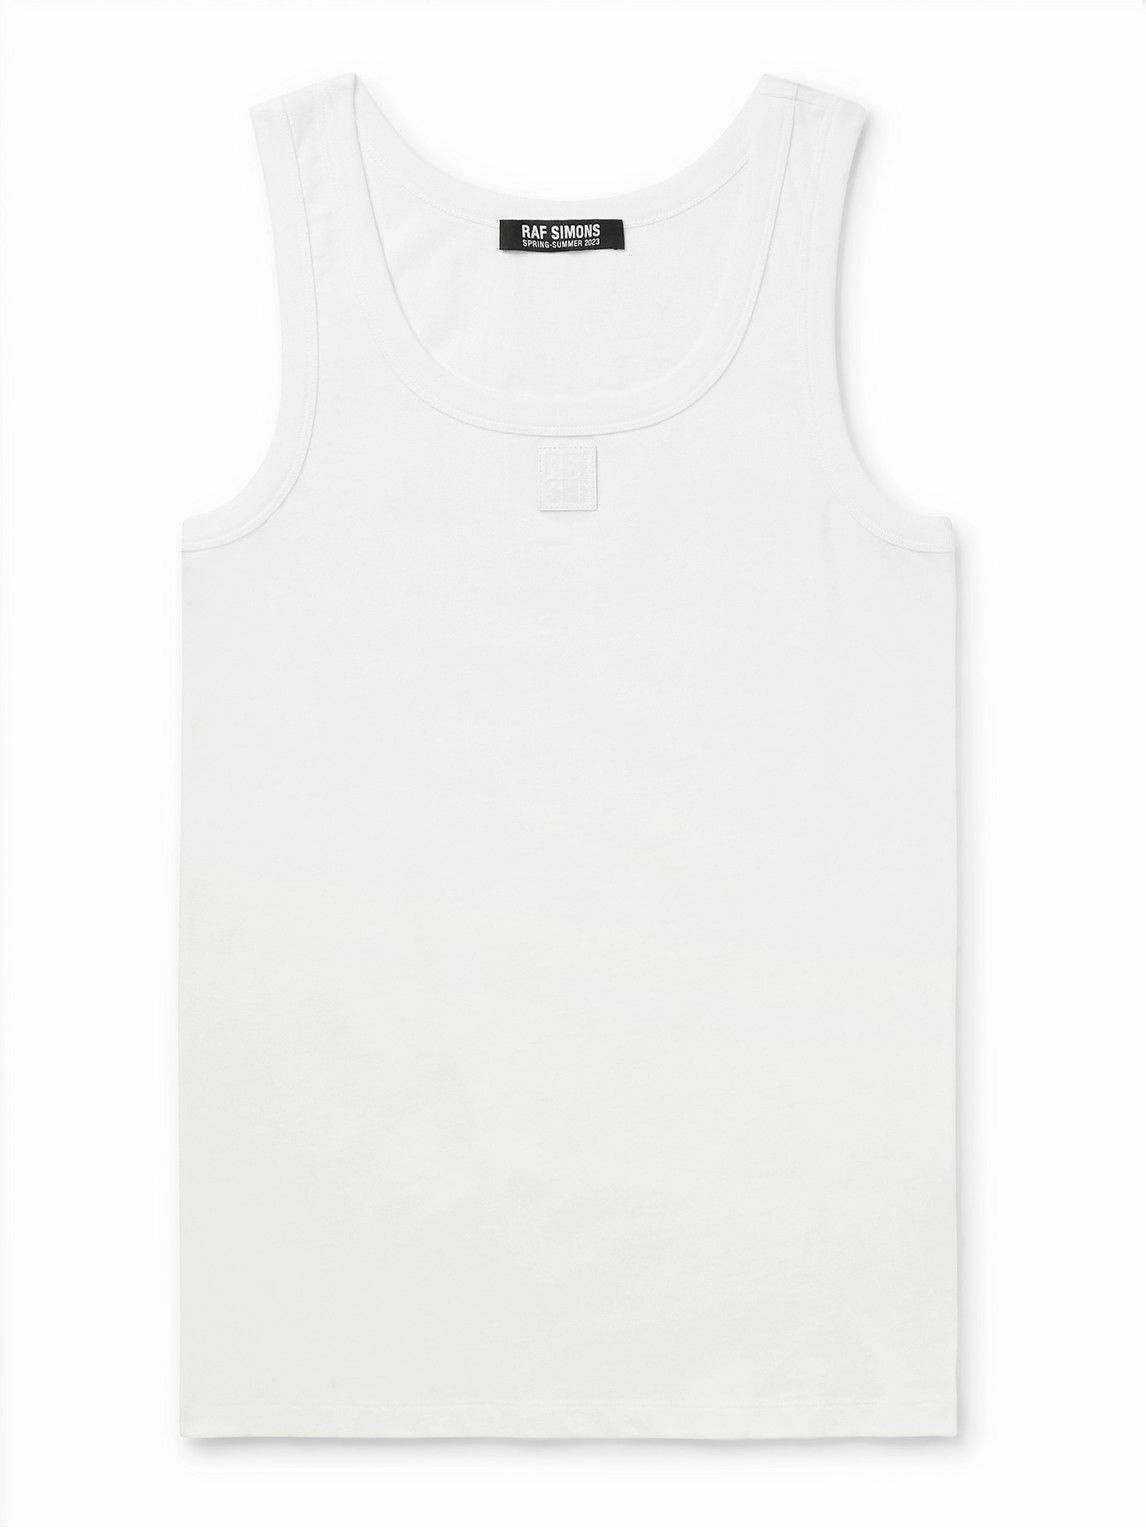 Photo: Raf Simons - Slim-Fit Logo-Appliquéd Cotton-Jersey Tank Top - White